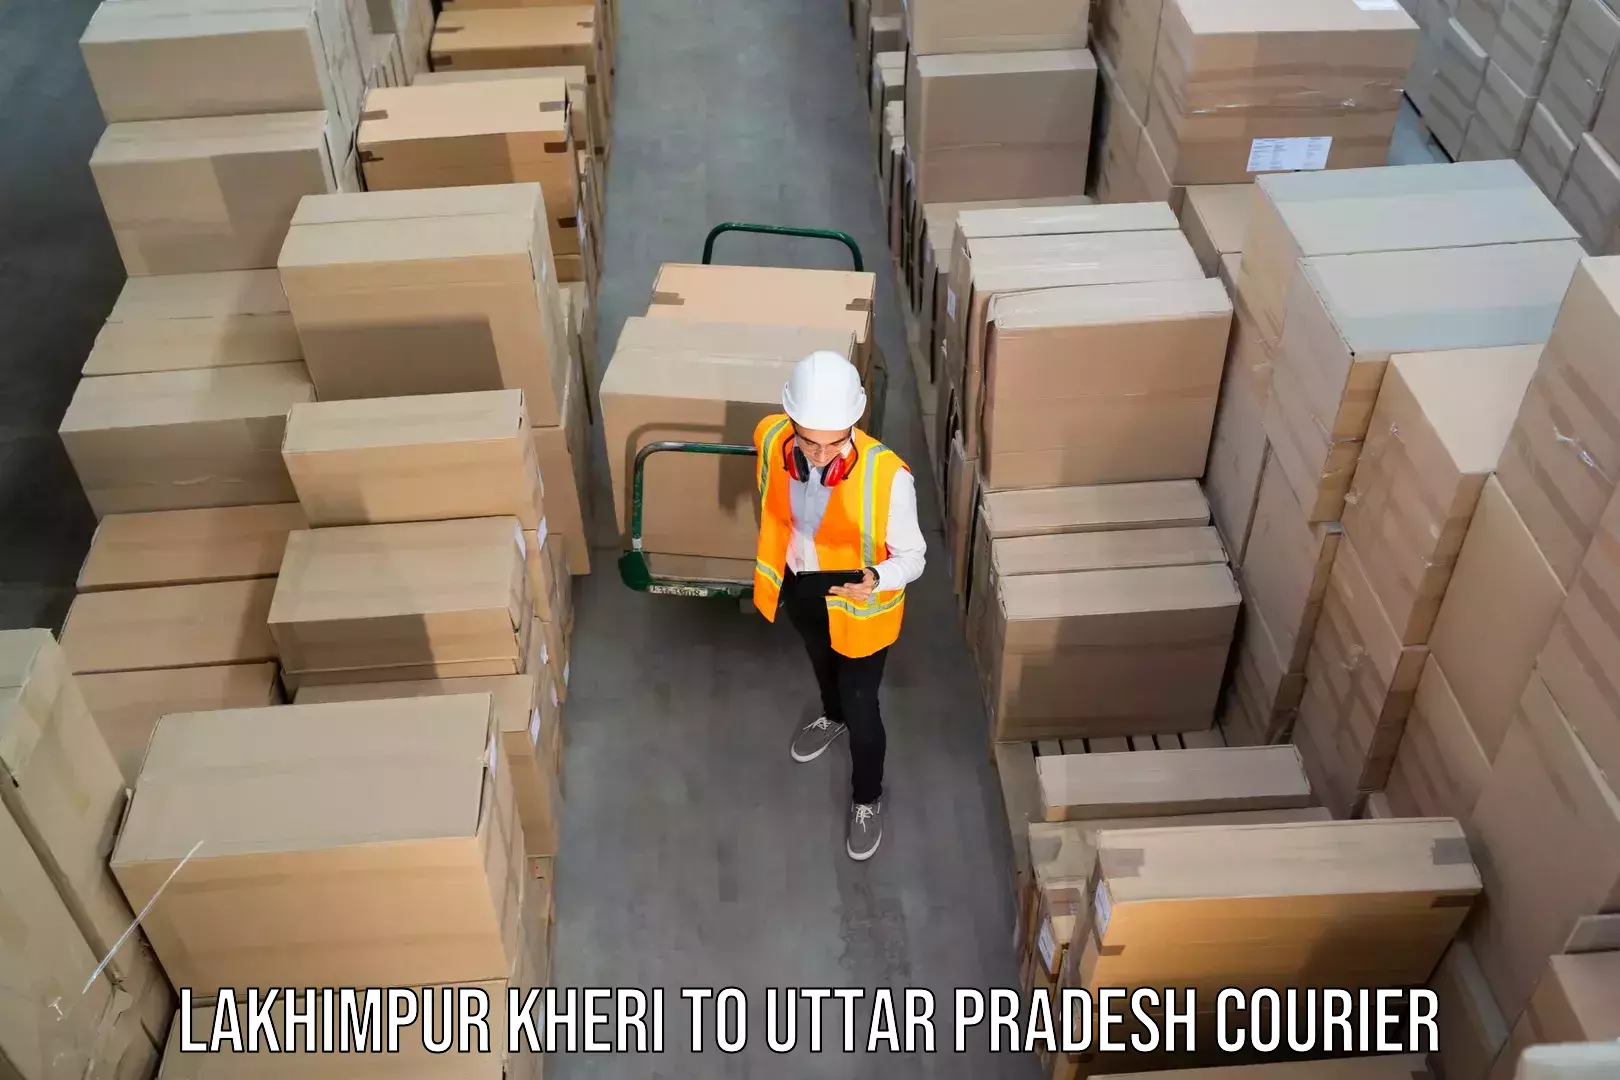 24/7 shipping services Lakhimpur Kheri to Sahaswan